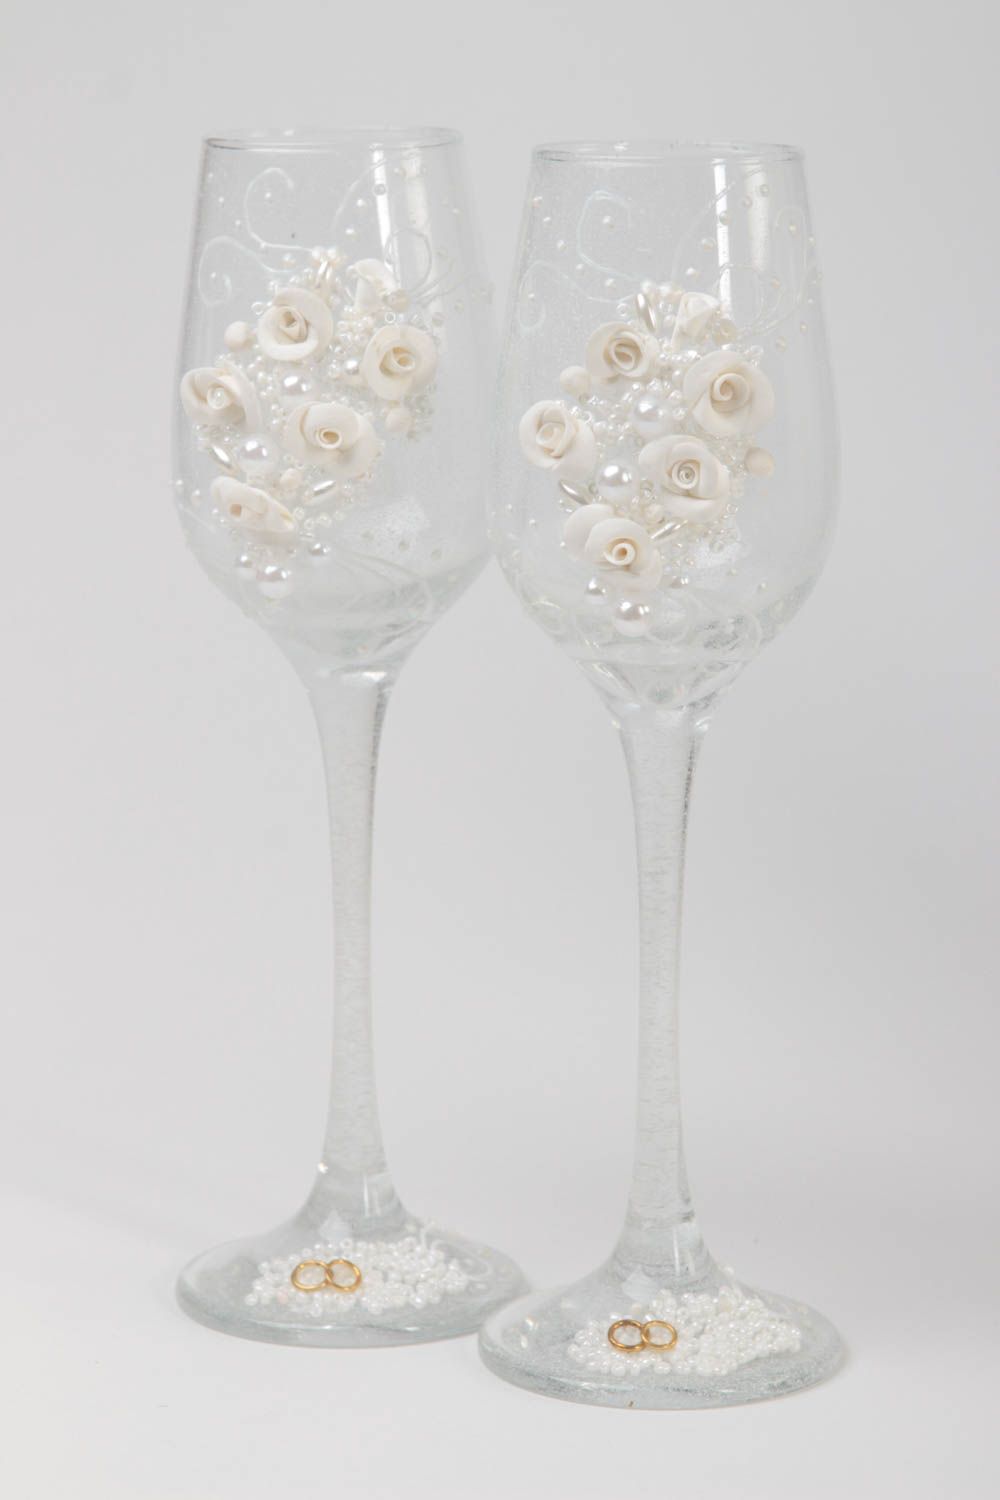 Hochzeit Sektgläser handmade Champagner Gläser Tischdeko hochzeit Hochzeit Deko foto 2